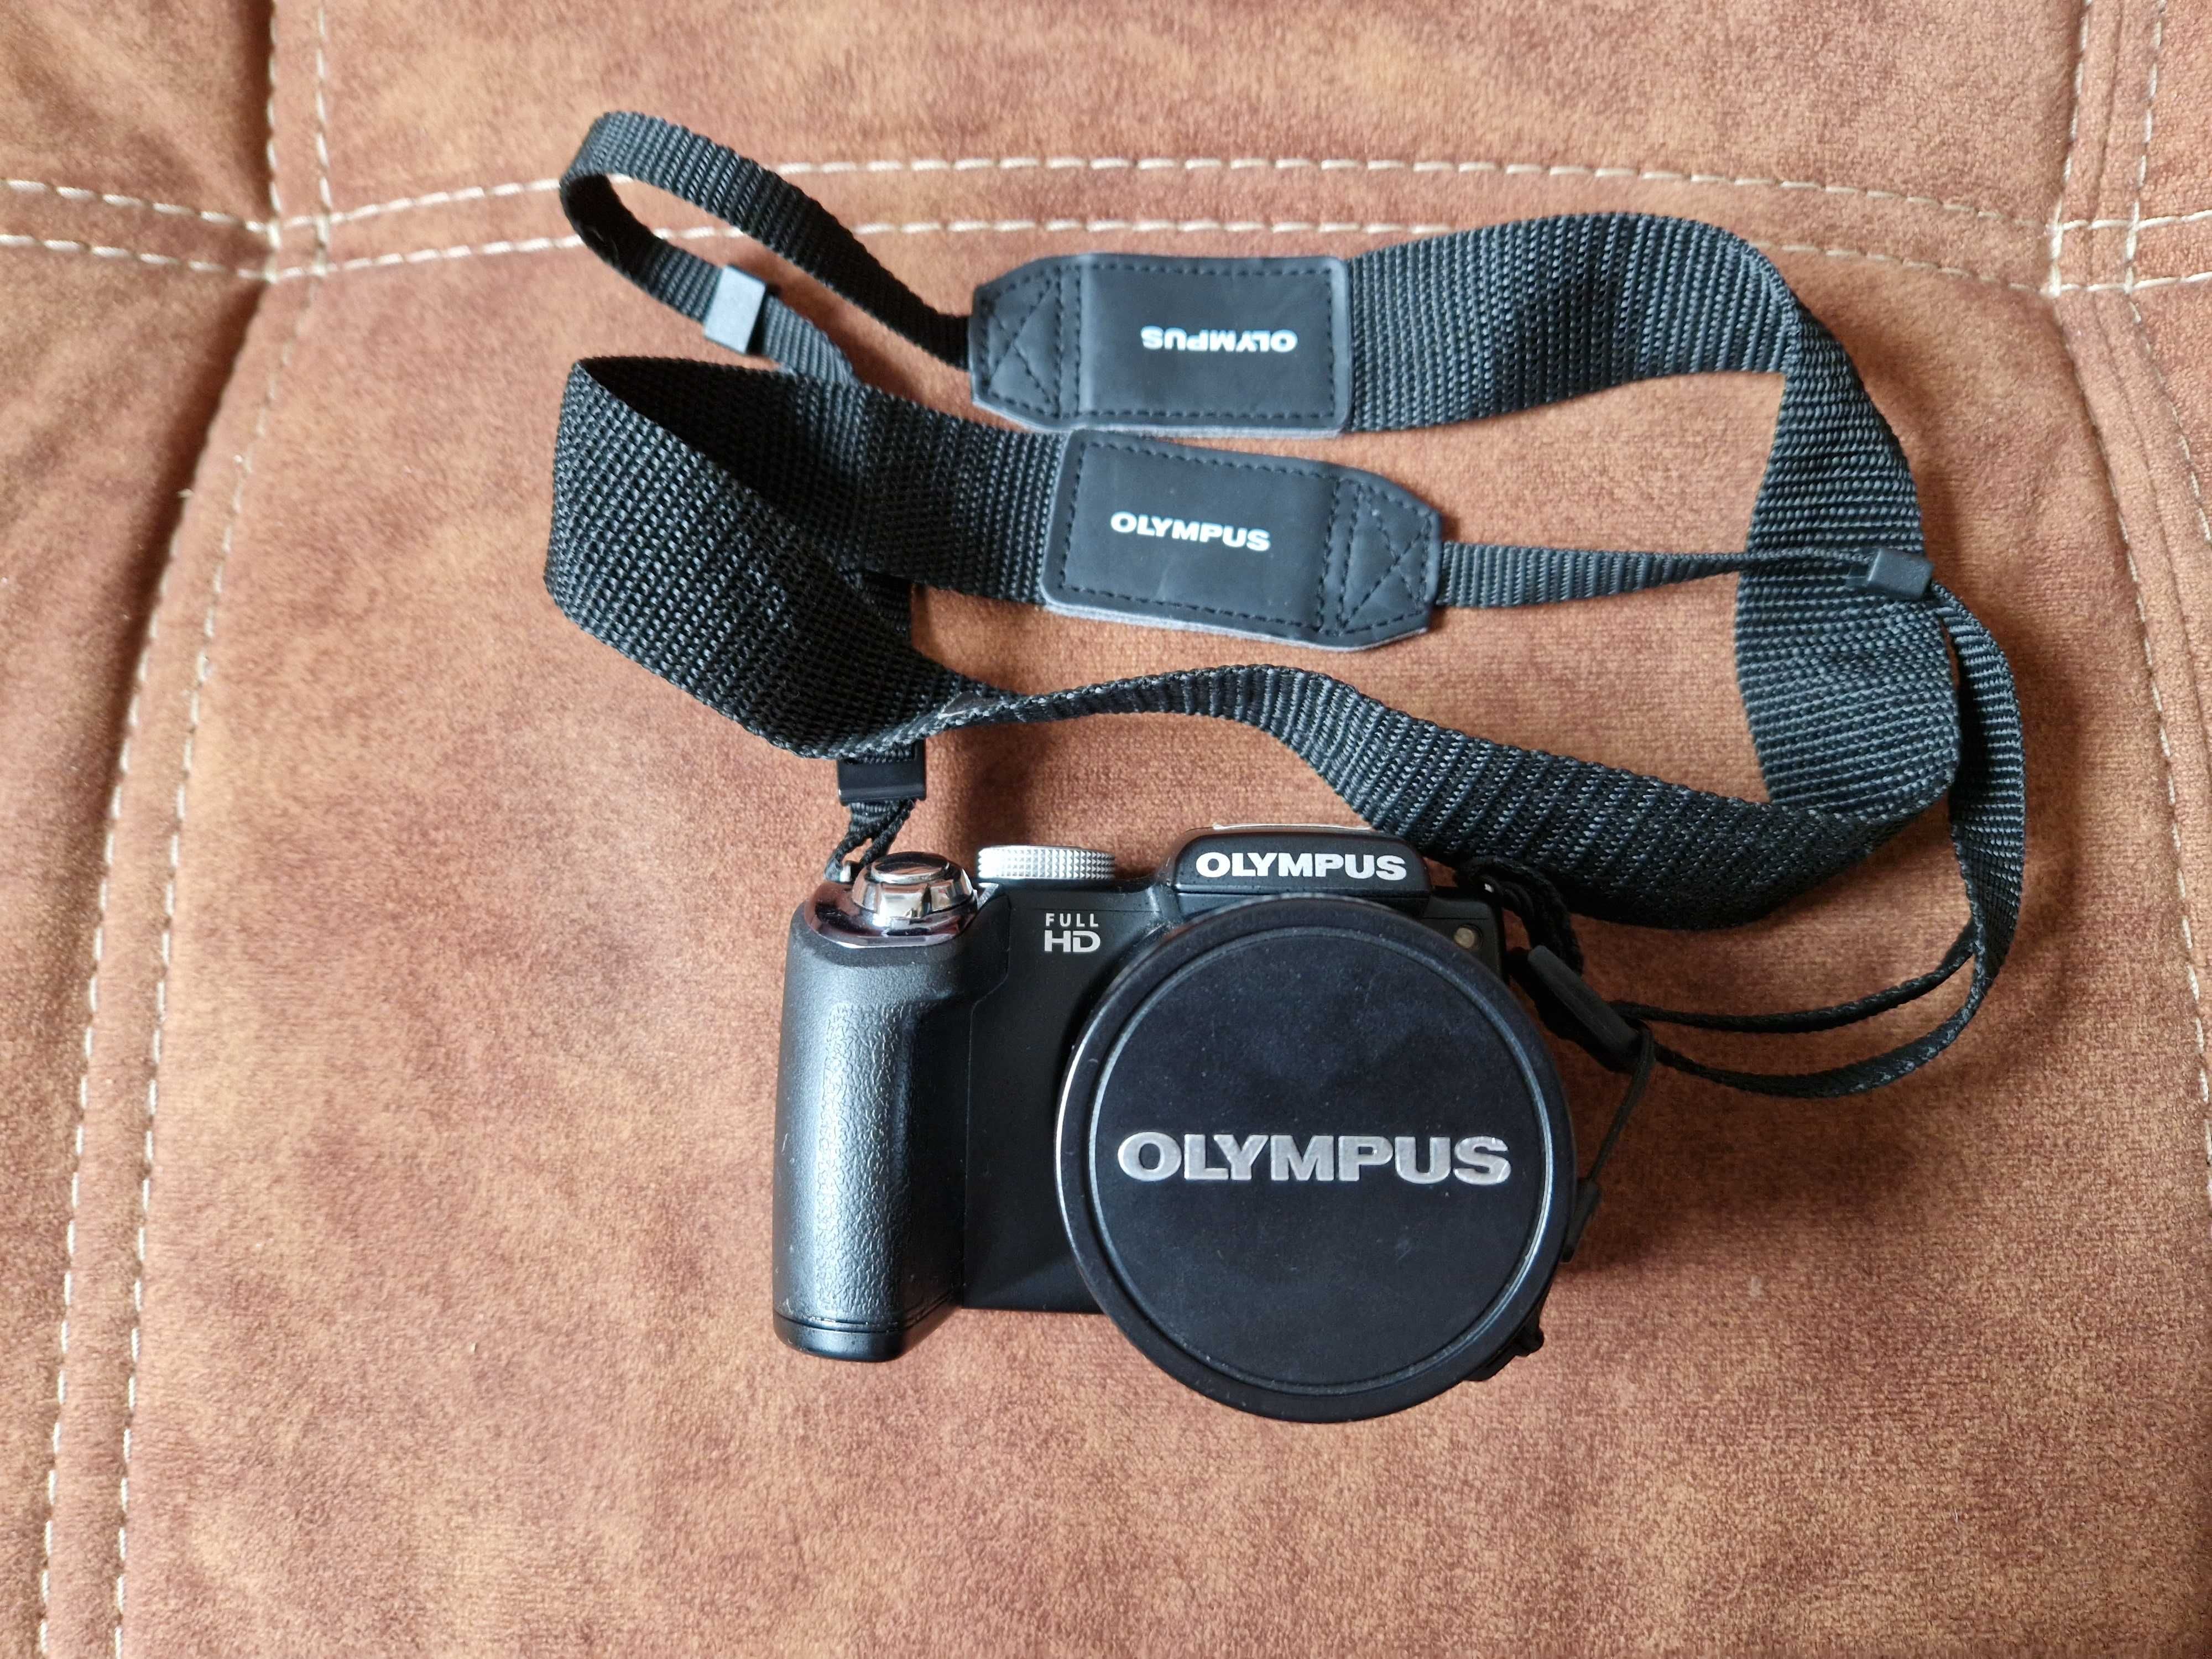 Aparat Olympus sp-720 UZ